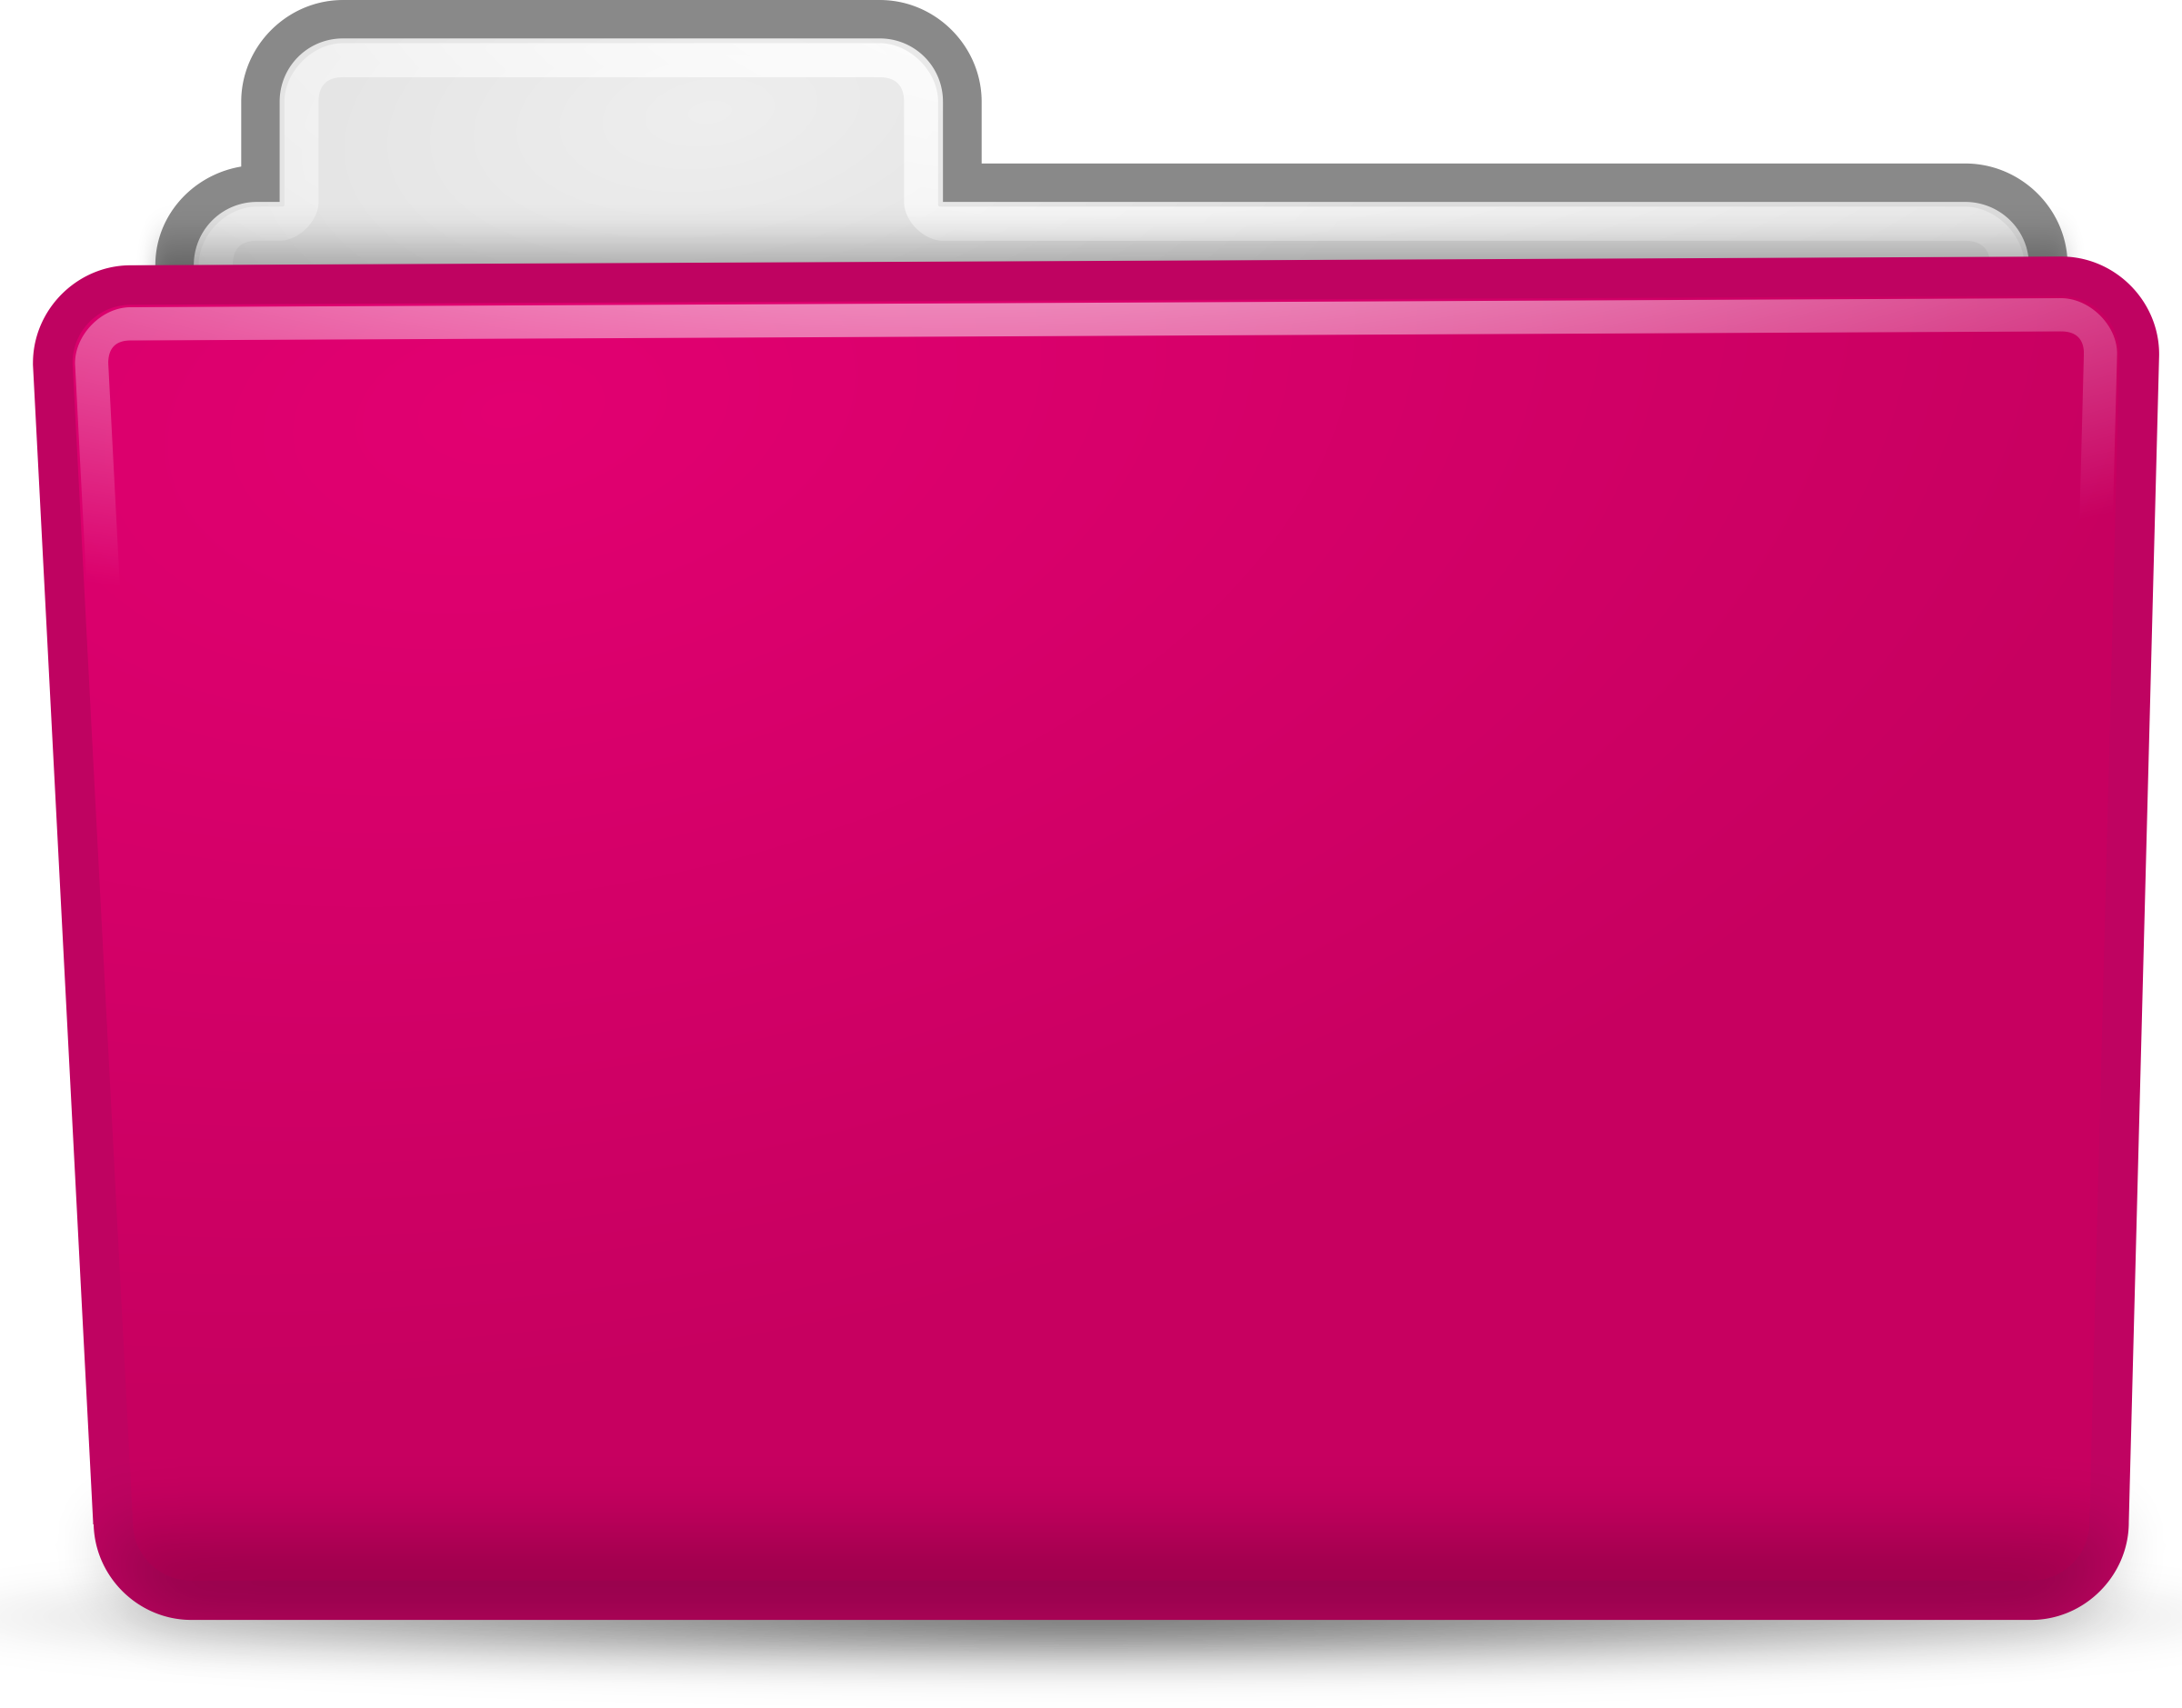 Pink Folder Clipart.